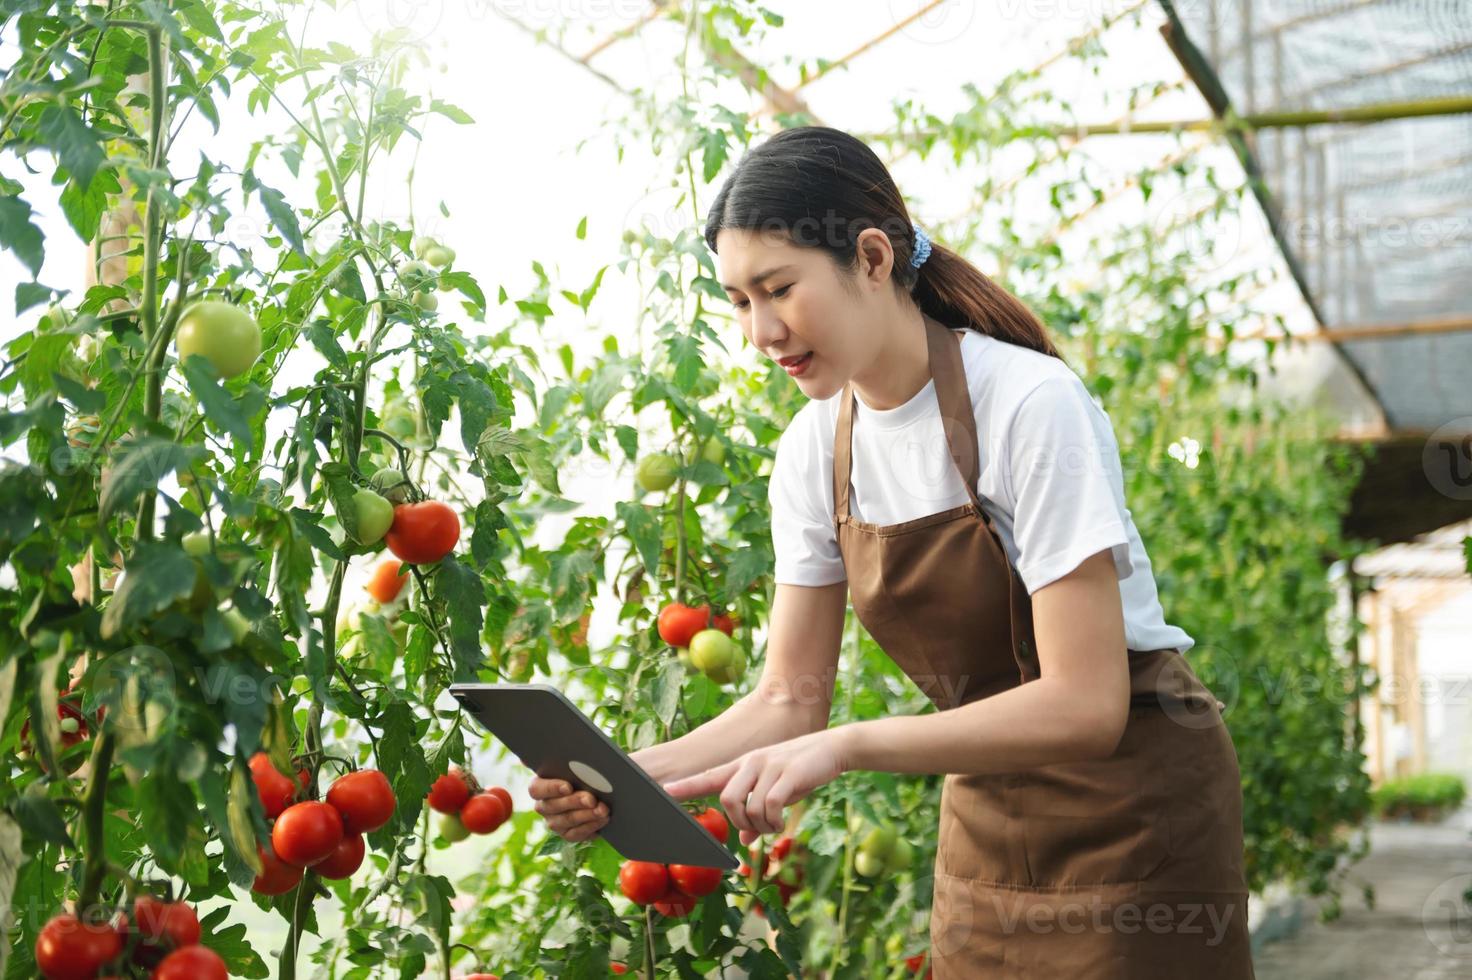 l'agriculture utilise des tablettes de contrôle de la production pour surveiller la qualité des légumes et des tomates en serre. agriculteur intelligent utilisant une technologie photo